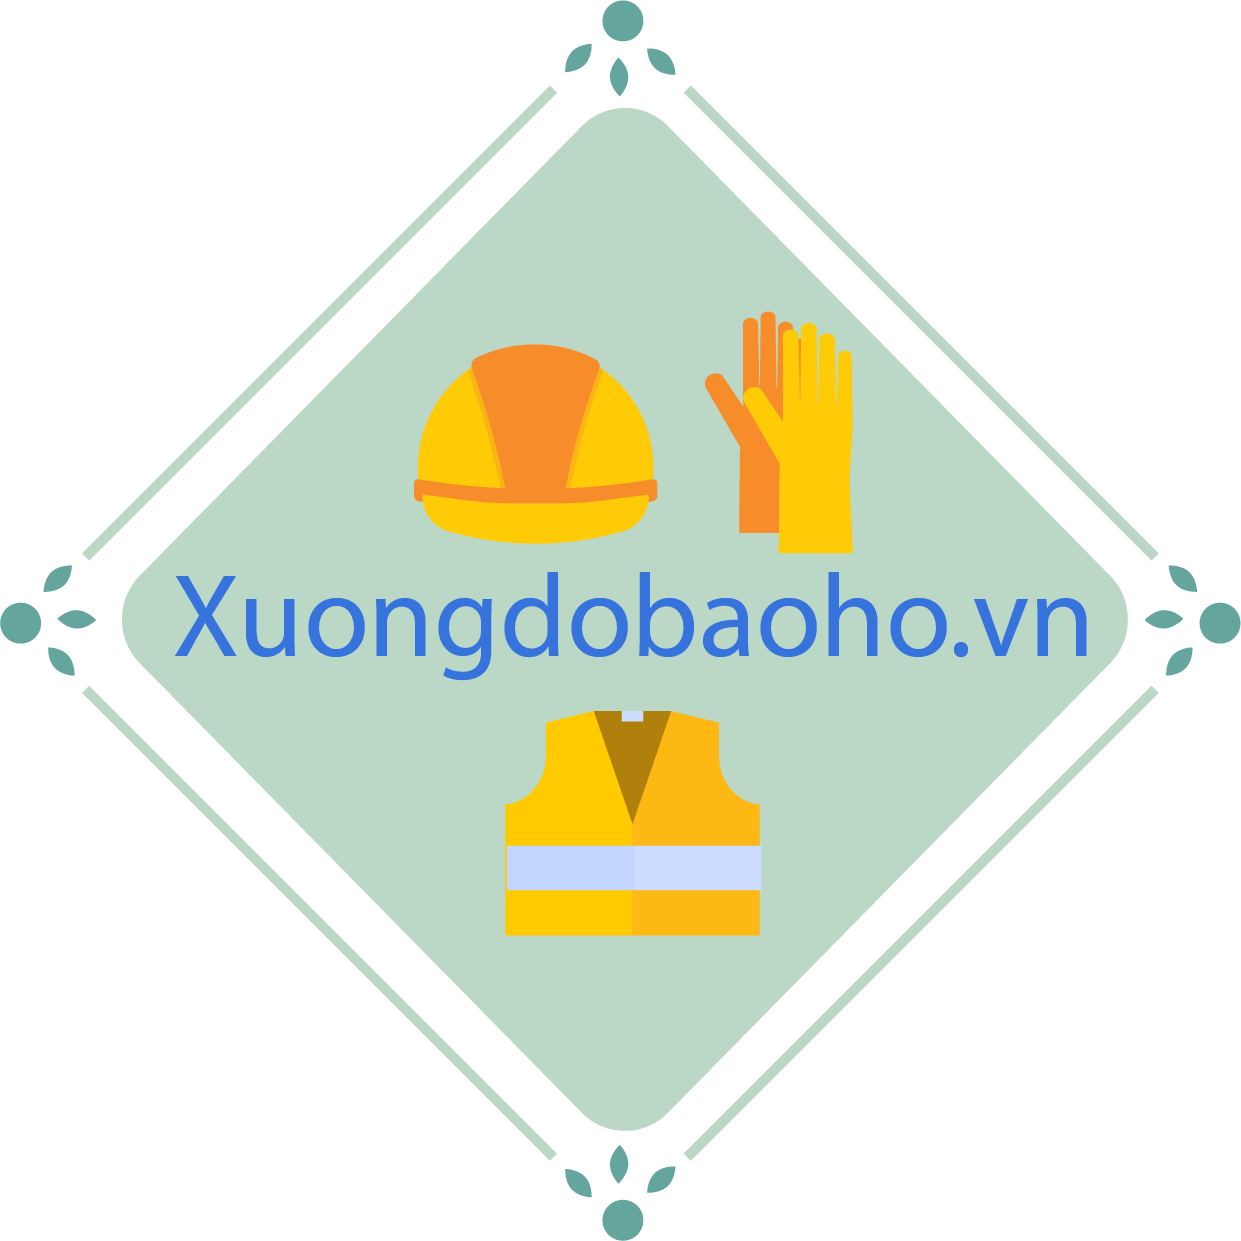 Xuongdobaoho.vn